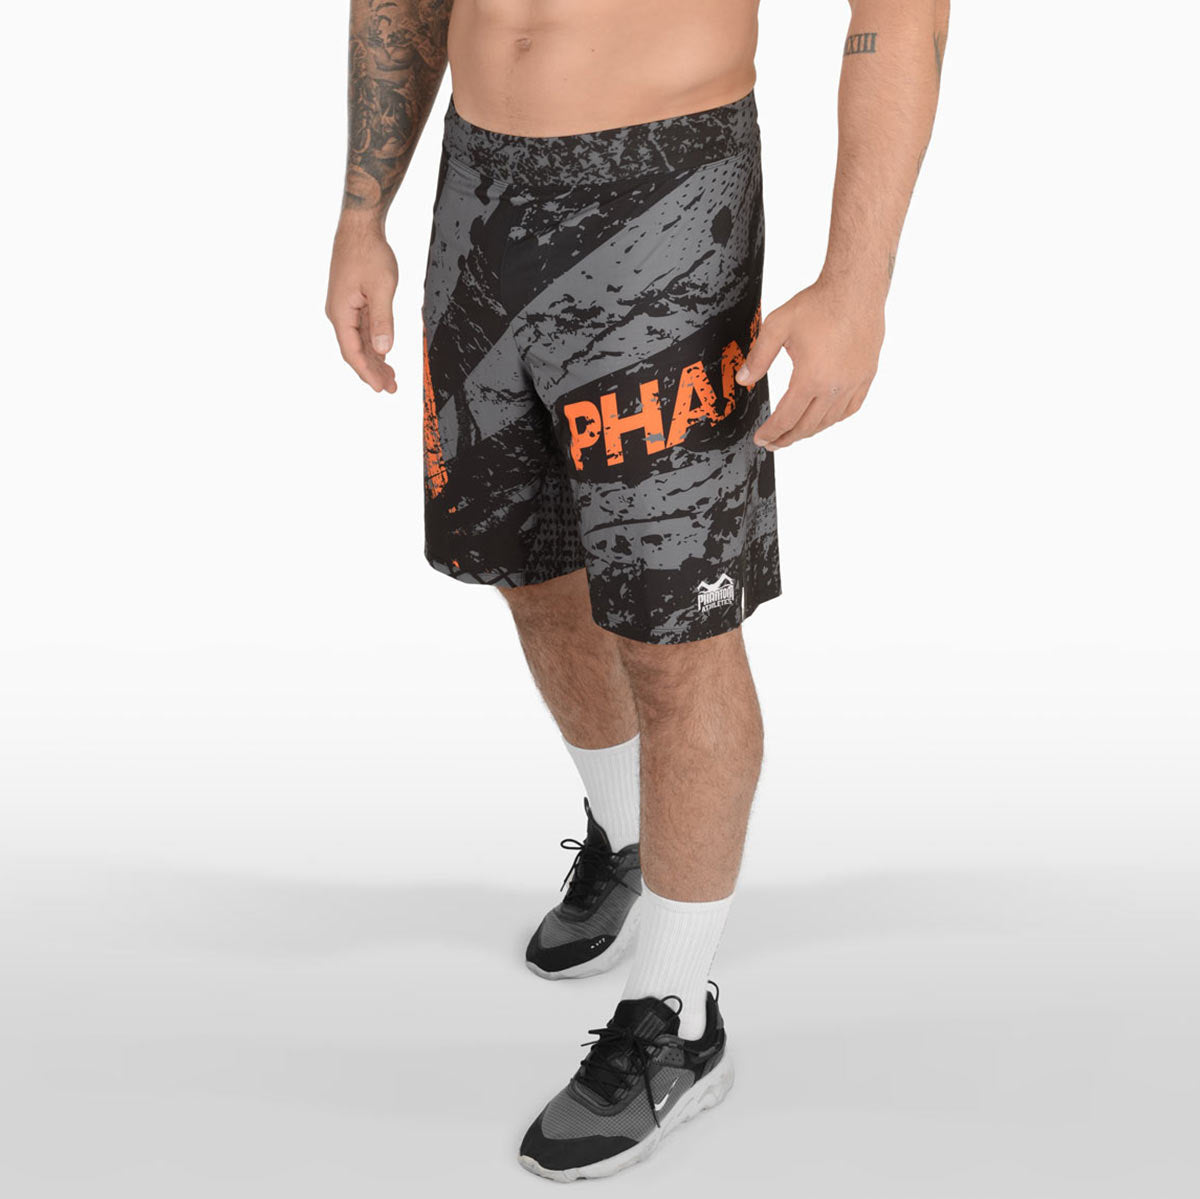 Phantom FLEX -taistelushortsit ovat markkinoiden parhaita taistelushortseja. Ultrakevyt, erittäin joustava ja repeytymätön. Absoluuttiseen minimiin vähennettynä se tarjoaa sinulle maksimaalisen suorituskyvyn kamppailulajeissasi. Ei ole väliä onko BJJ, MMA, Muay Thai tai potkunyrkkeily. Phantom Athletics FLEX-shortsit tuovat sinussa esiin parhaat puolet. Tässä oranssissa roiskekuviossa.